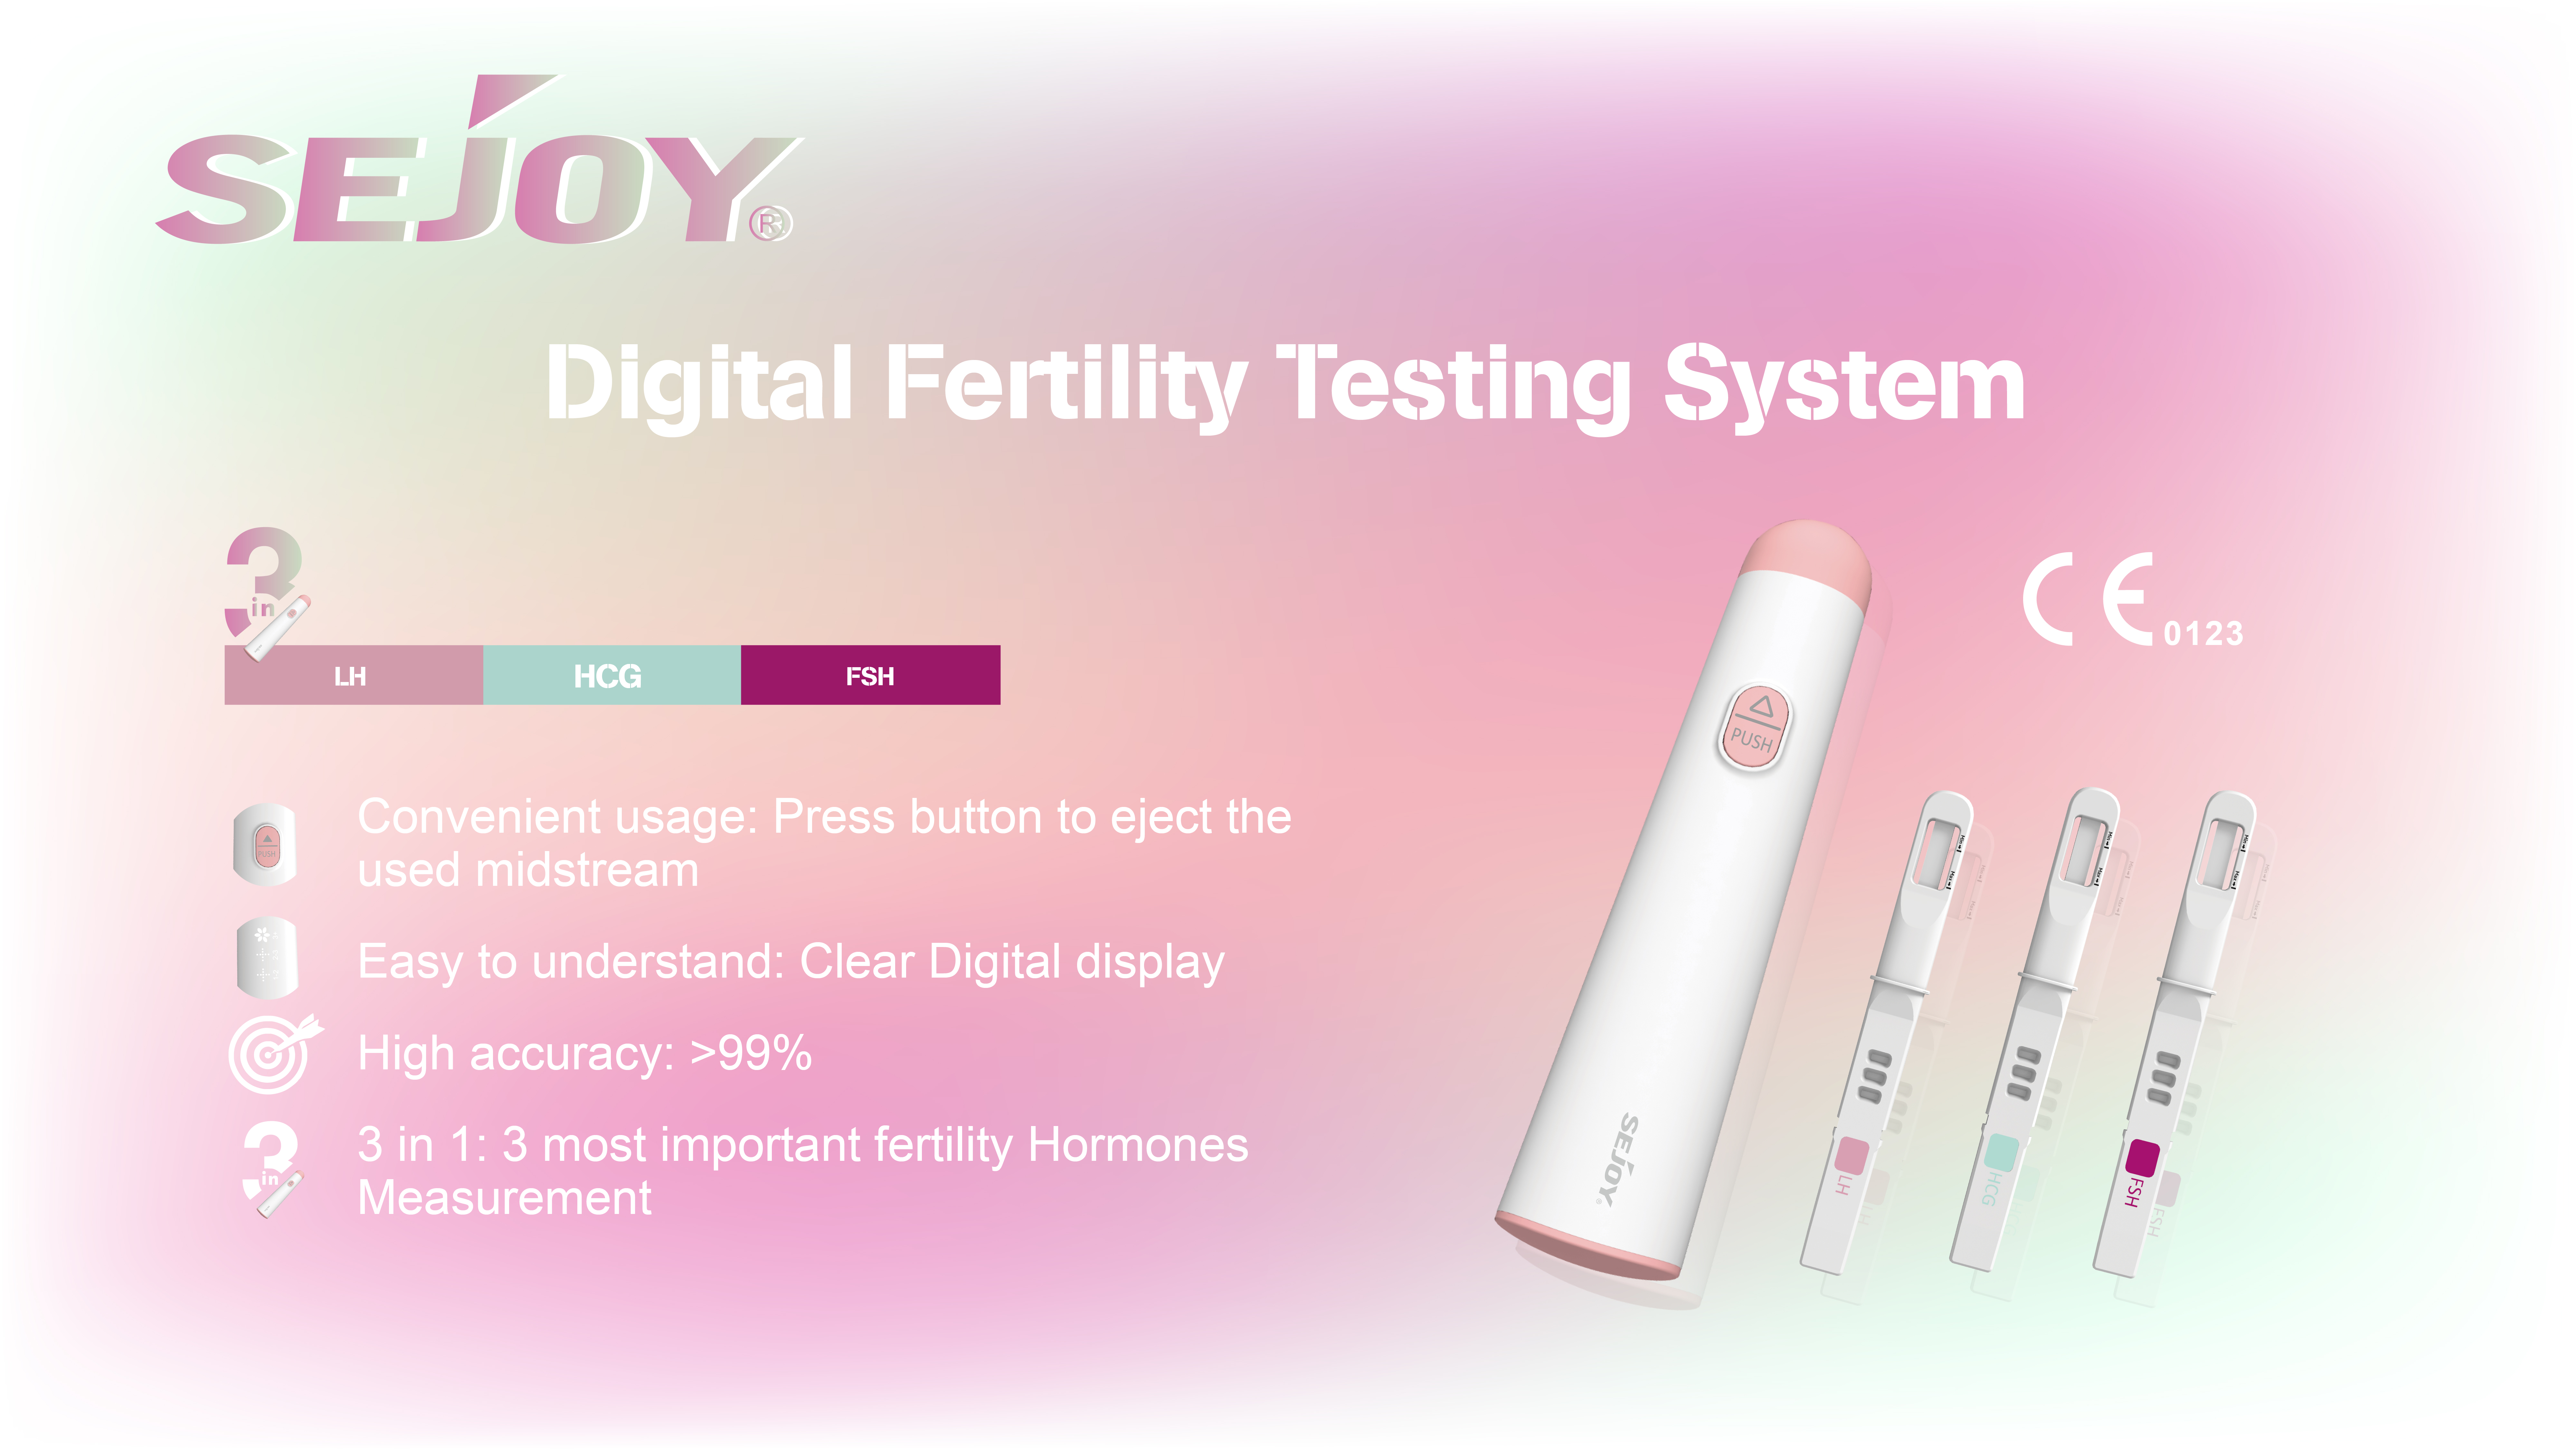 https://www.sejoy.com/digital-fertility-testing-system-product/